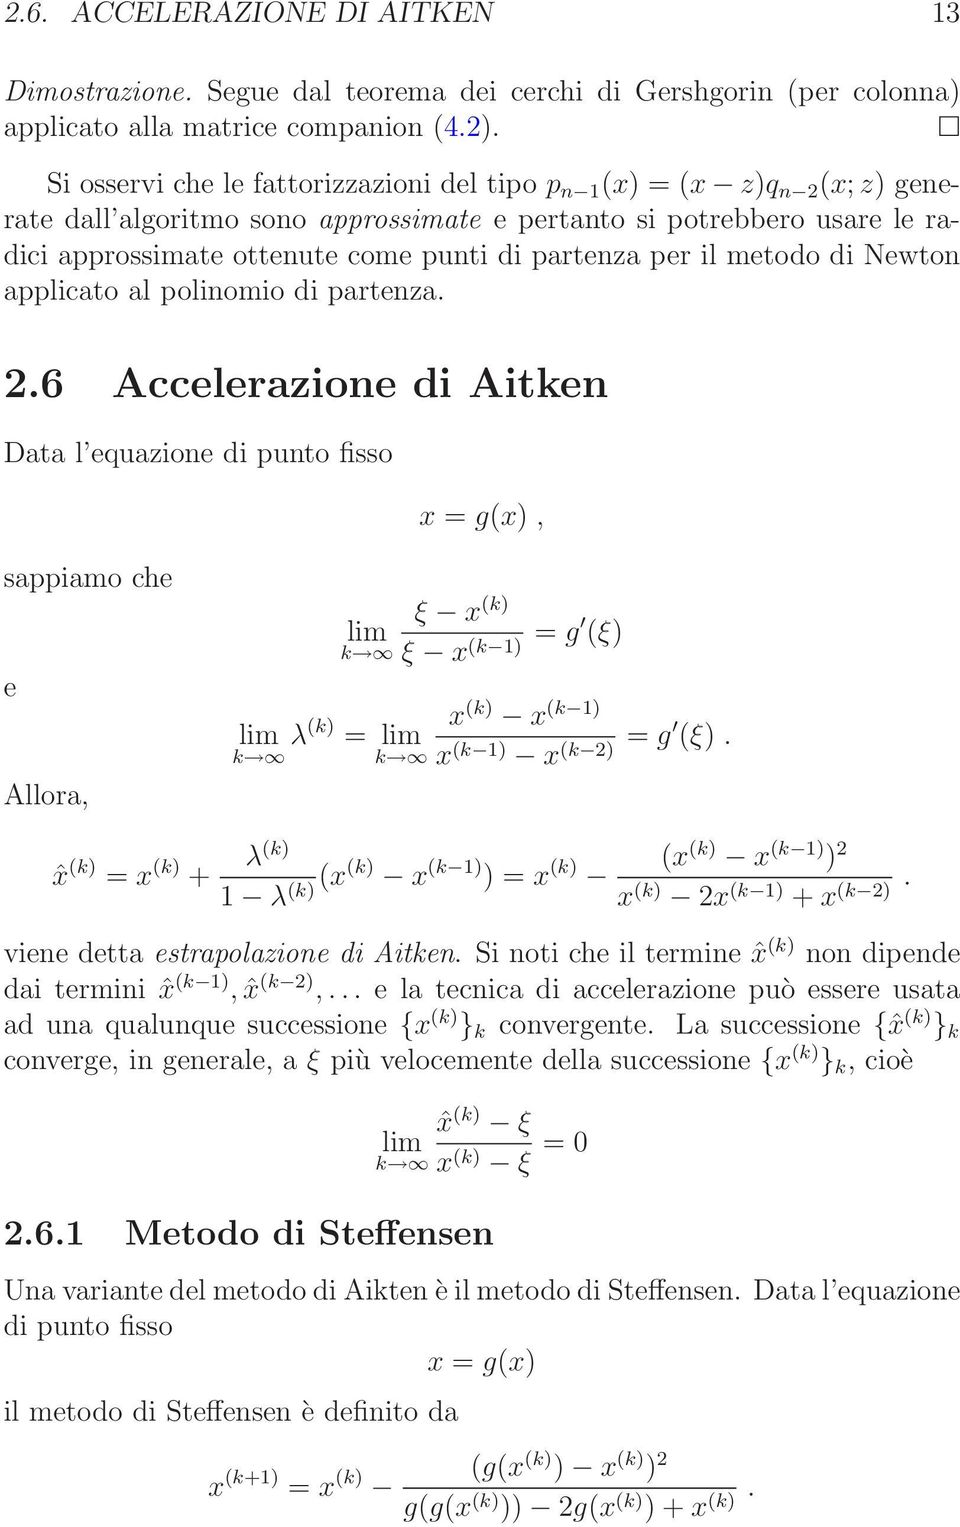 partenza 26 Accelerazione di Aitken Data l equazione di punto fisso x = g(x), sappiamo che e Allora, lim k ξ x (k) ξ x (k 1) = g (ξ) x (k) x (k 1) lim k λ(k) = lim k x (k 1) x = (k 2) g (ξ) ˆx (k) =